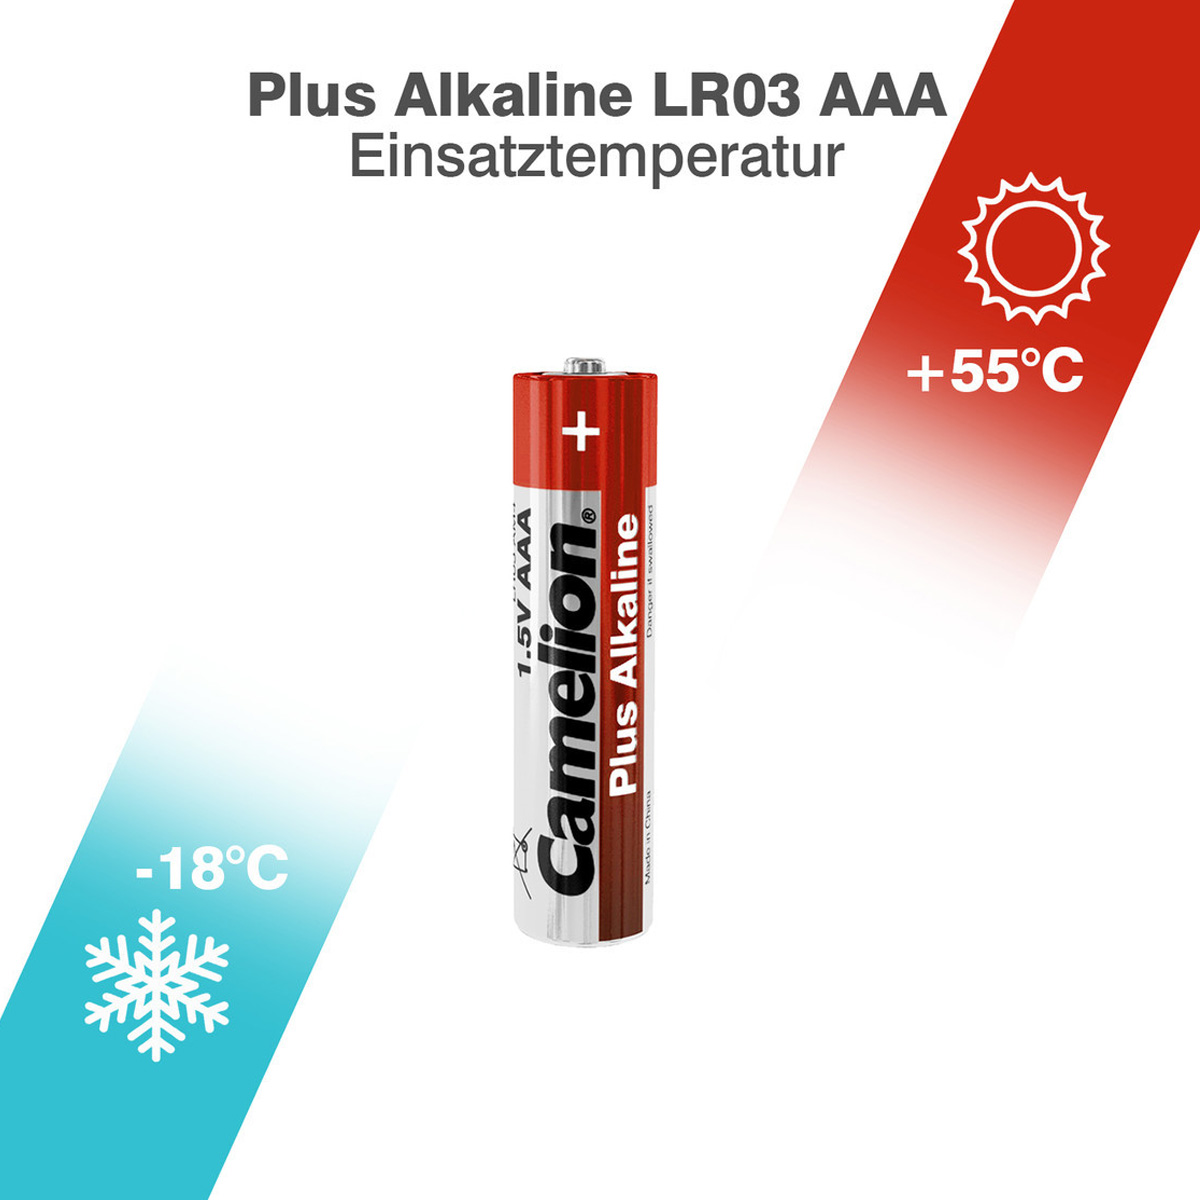 Batterie Mignon AAA LR3 1,5V PLUS Alkaline - Leistung auf Dauer - 8 Stück